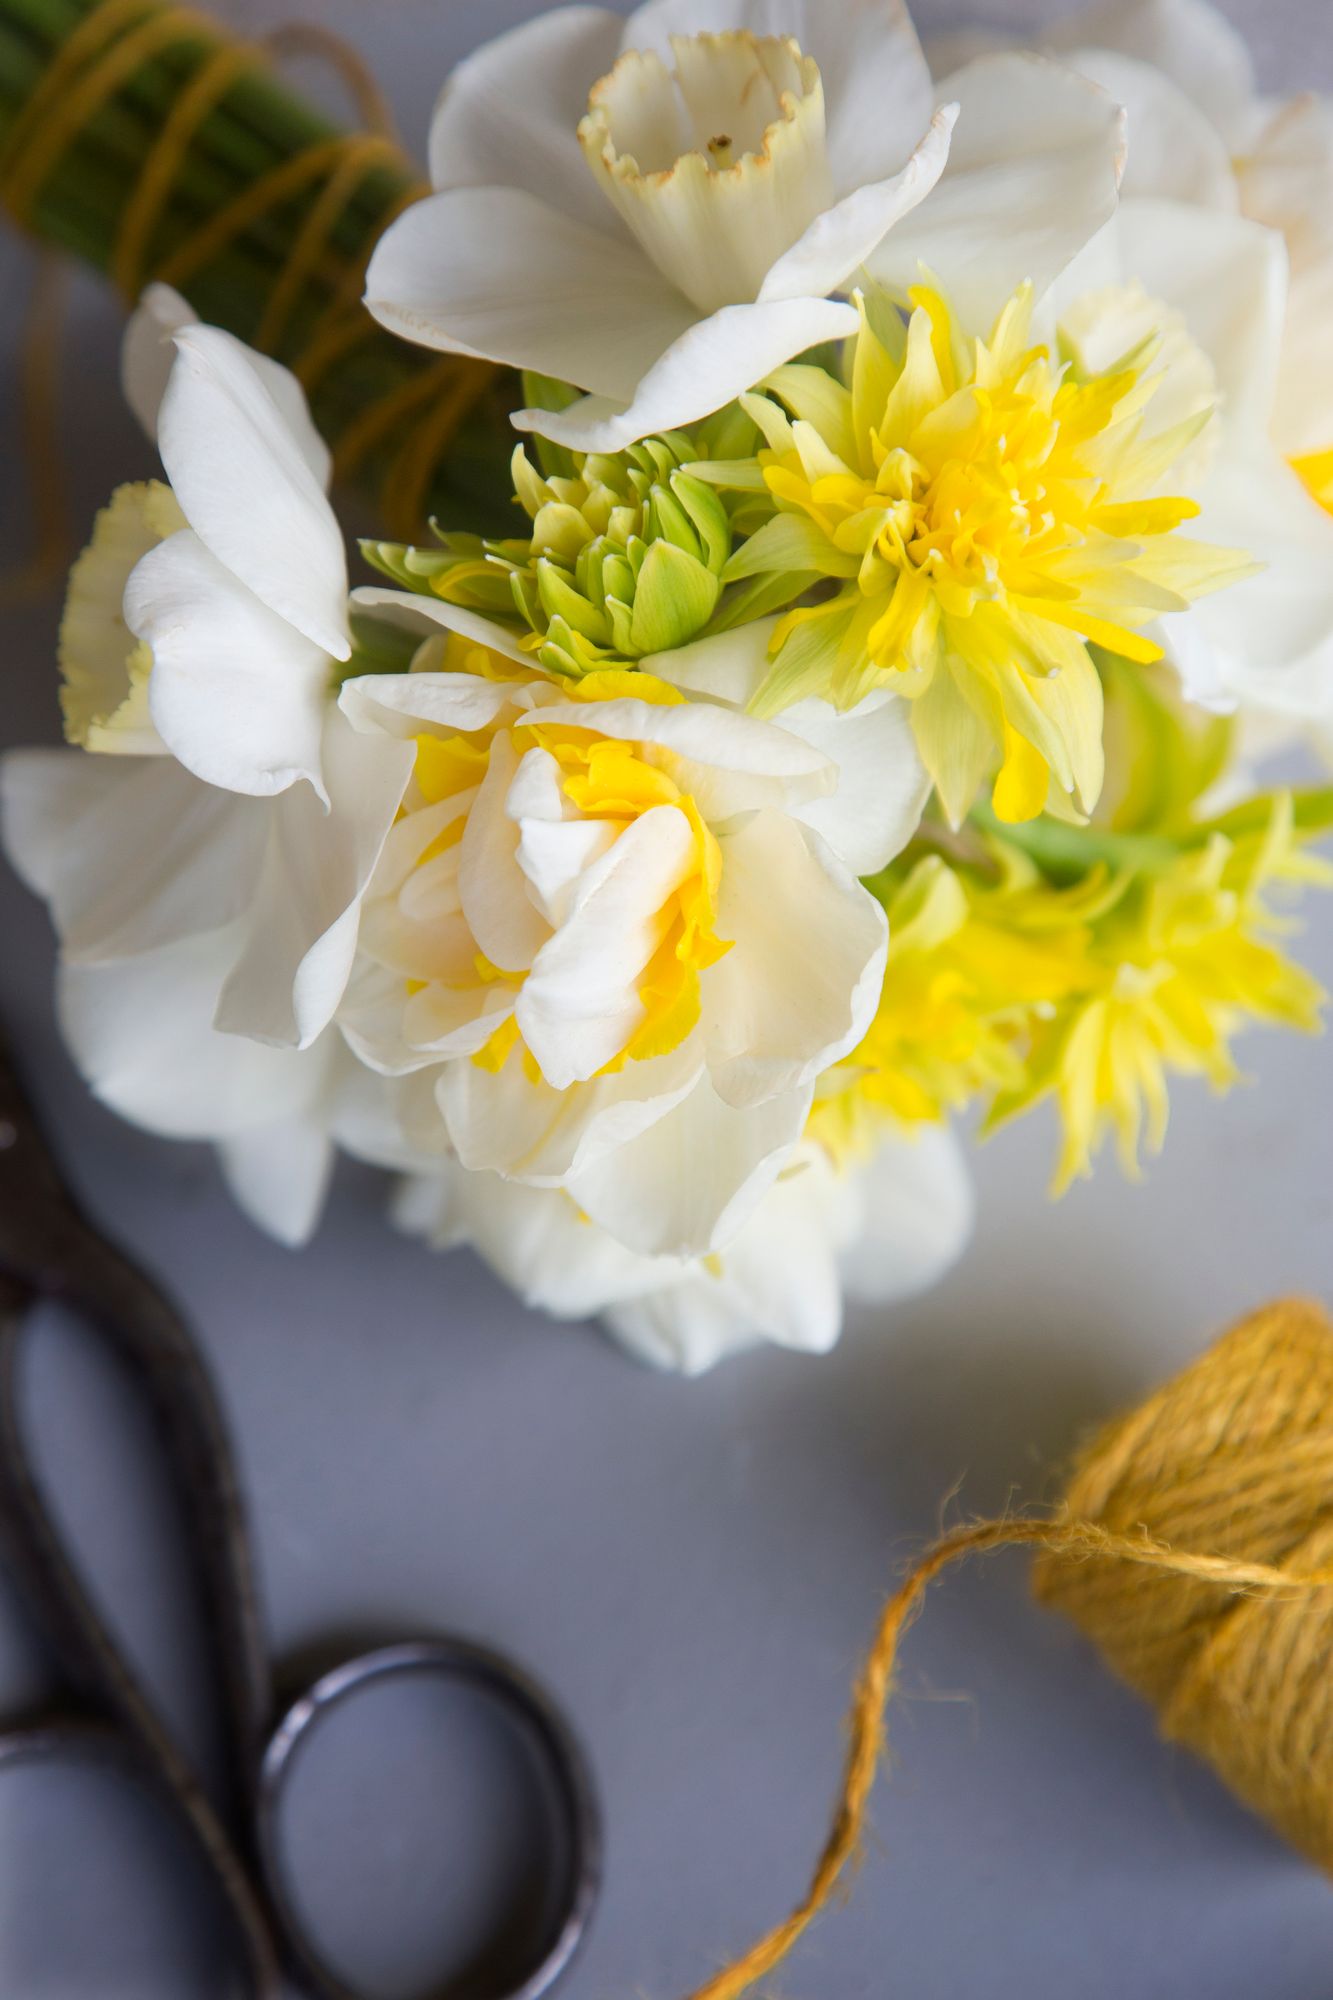 Narsissin lajikkeet sopivat leikkokukiksi, mutta niiden varresta erittyy limaa, joka voi haitata muita samassa maljakossa olevia kukkia. Kokoa narsisseista kimppu käyttämällä eri lajikkeita, kuvan kimpussa muun muassa ’Westward’, ’Geneva’ ja ’Rip van Winkle’ -narsisseja. Yksinkertainen ja tyylikäs kimppu tulee, kun käytät vain kukkavarsia ja poistat lehdet. Sido kukkavarret tiiviiksi nipuksi yhteen hamppunarulla. 